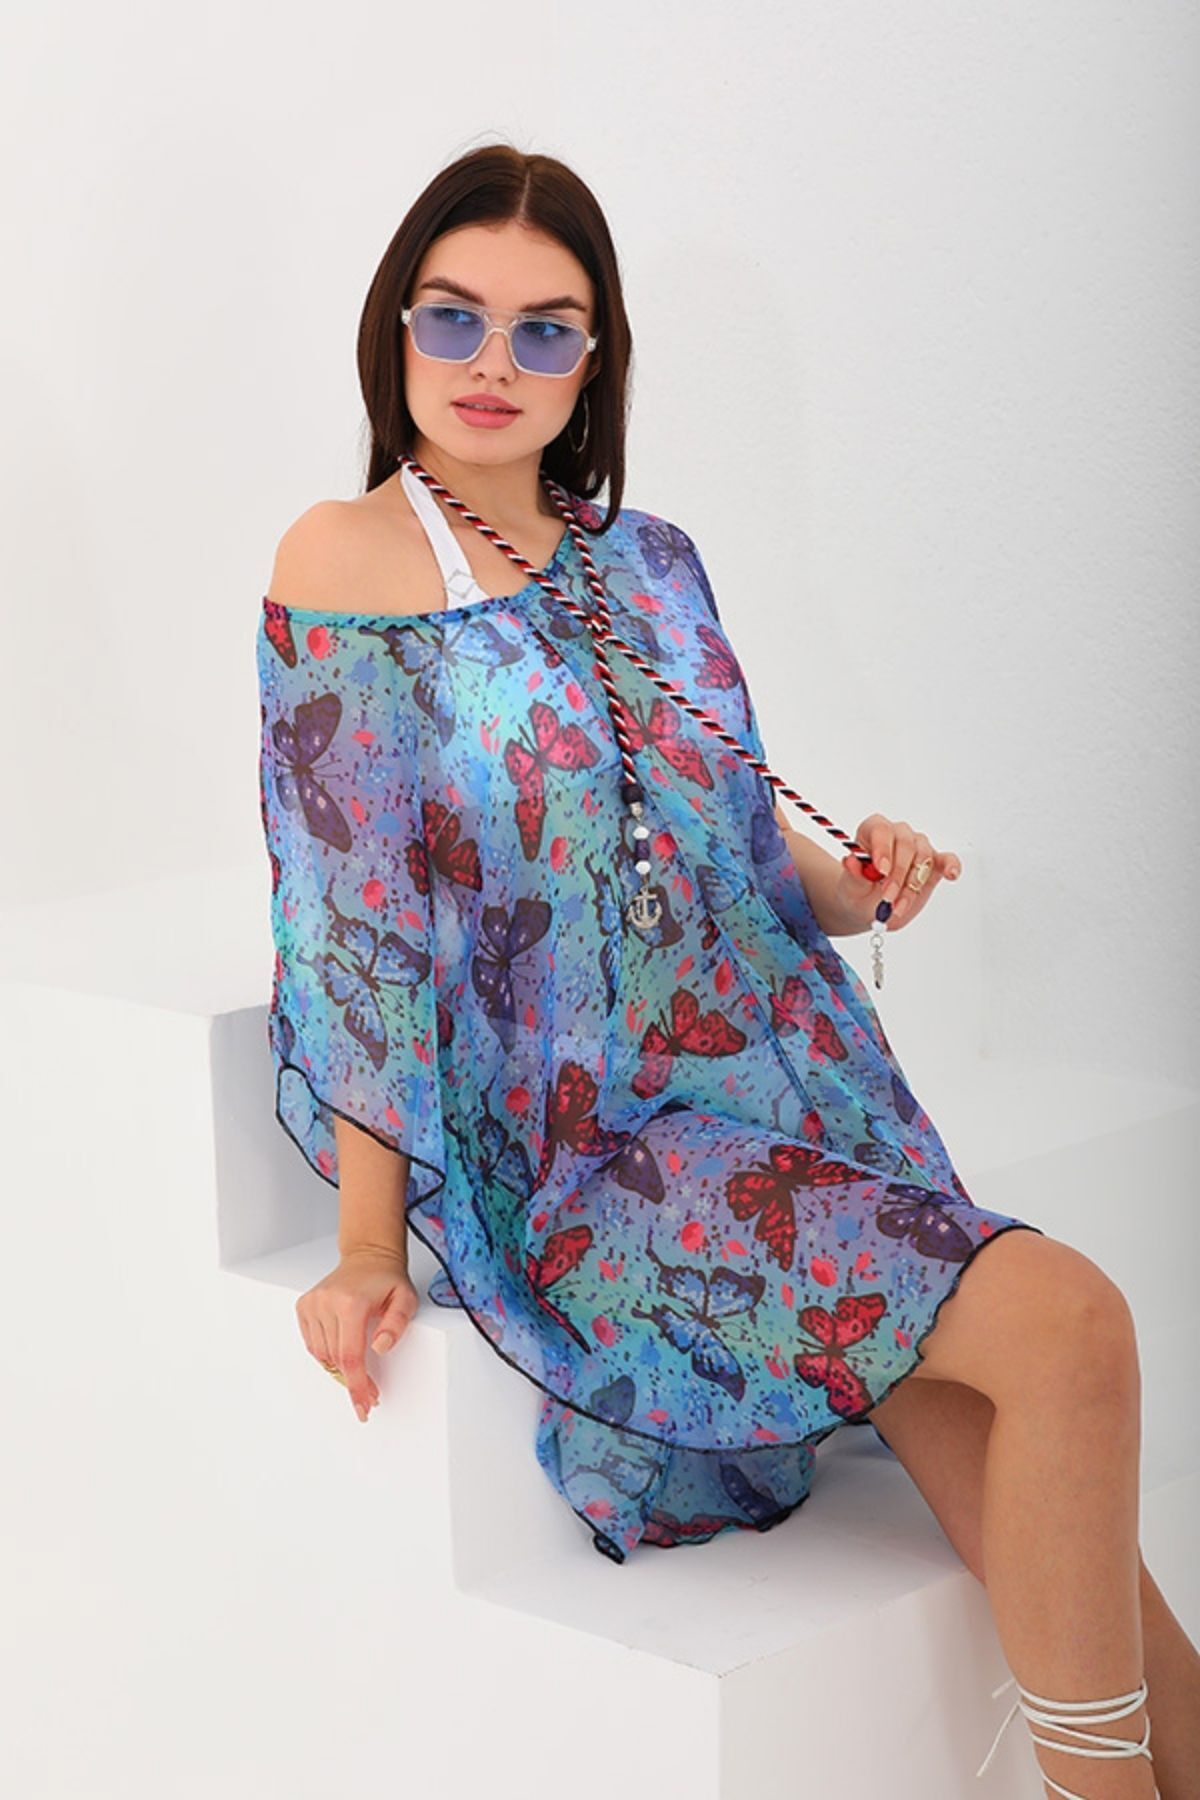 marecaldo Yazlık Kadın Giyim Modası Mayo Üzeri Yarasa Pareo Modeli Farfalla mavi desen